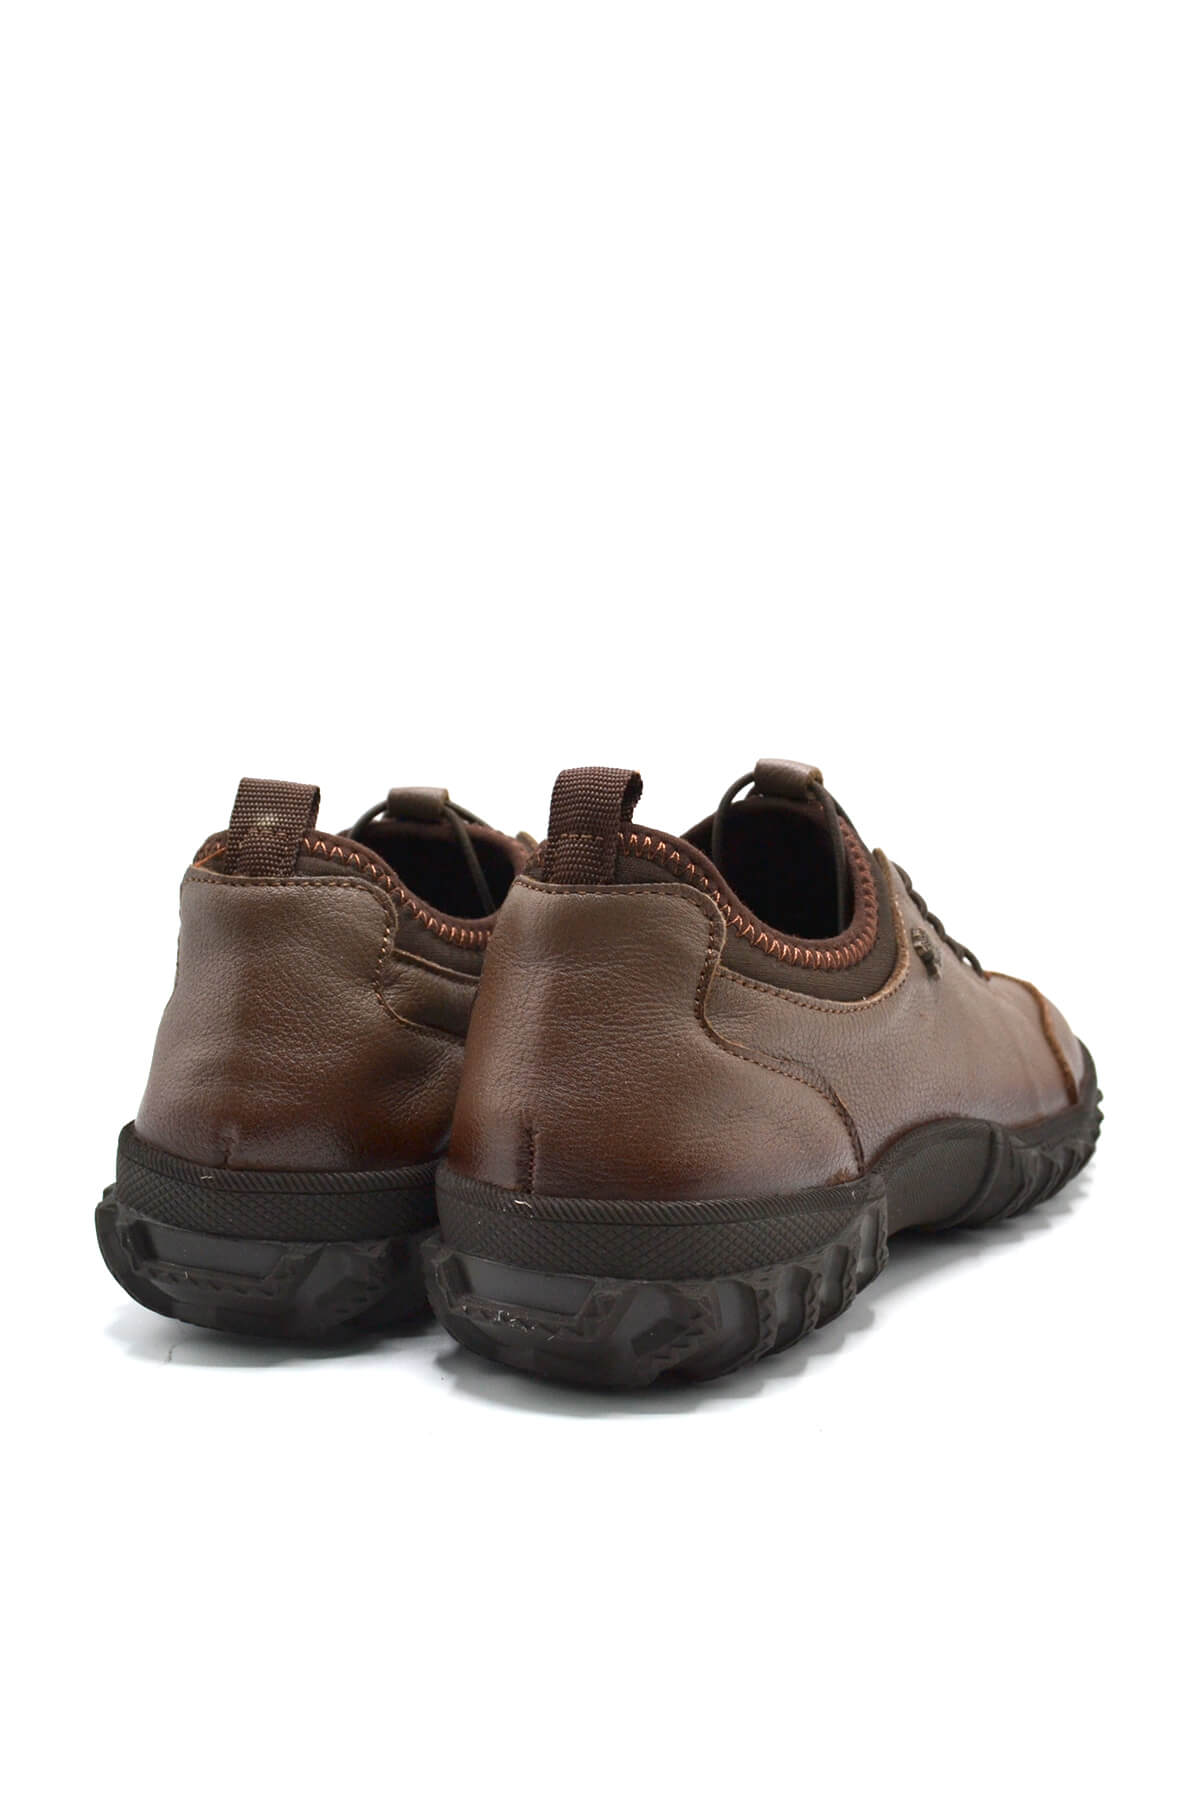 Kadın Comfort Deri Ayakkabı Vizon 2255201K - Thumbnail